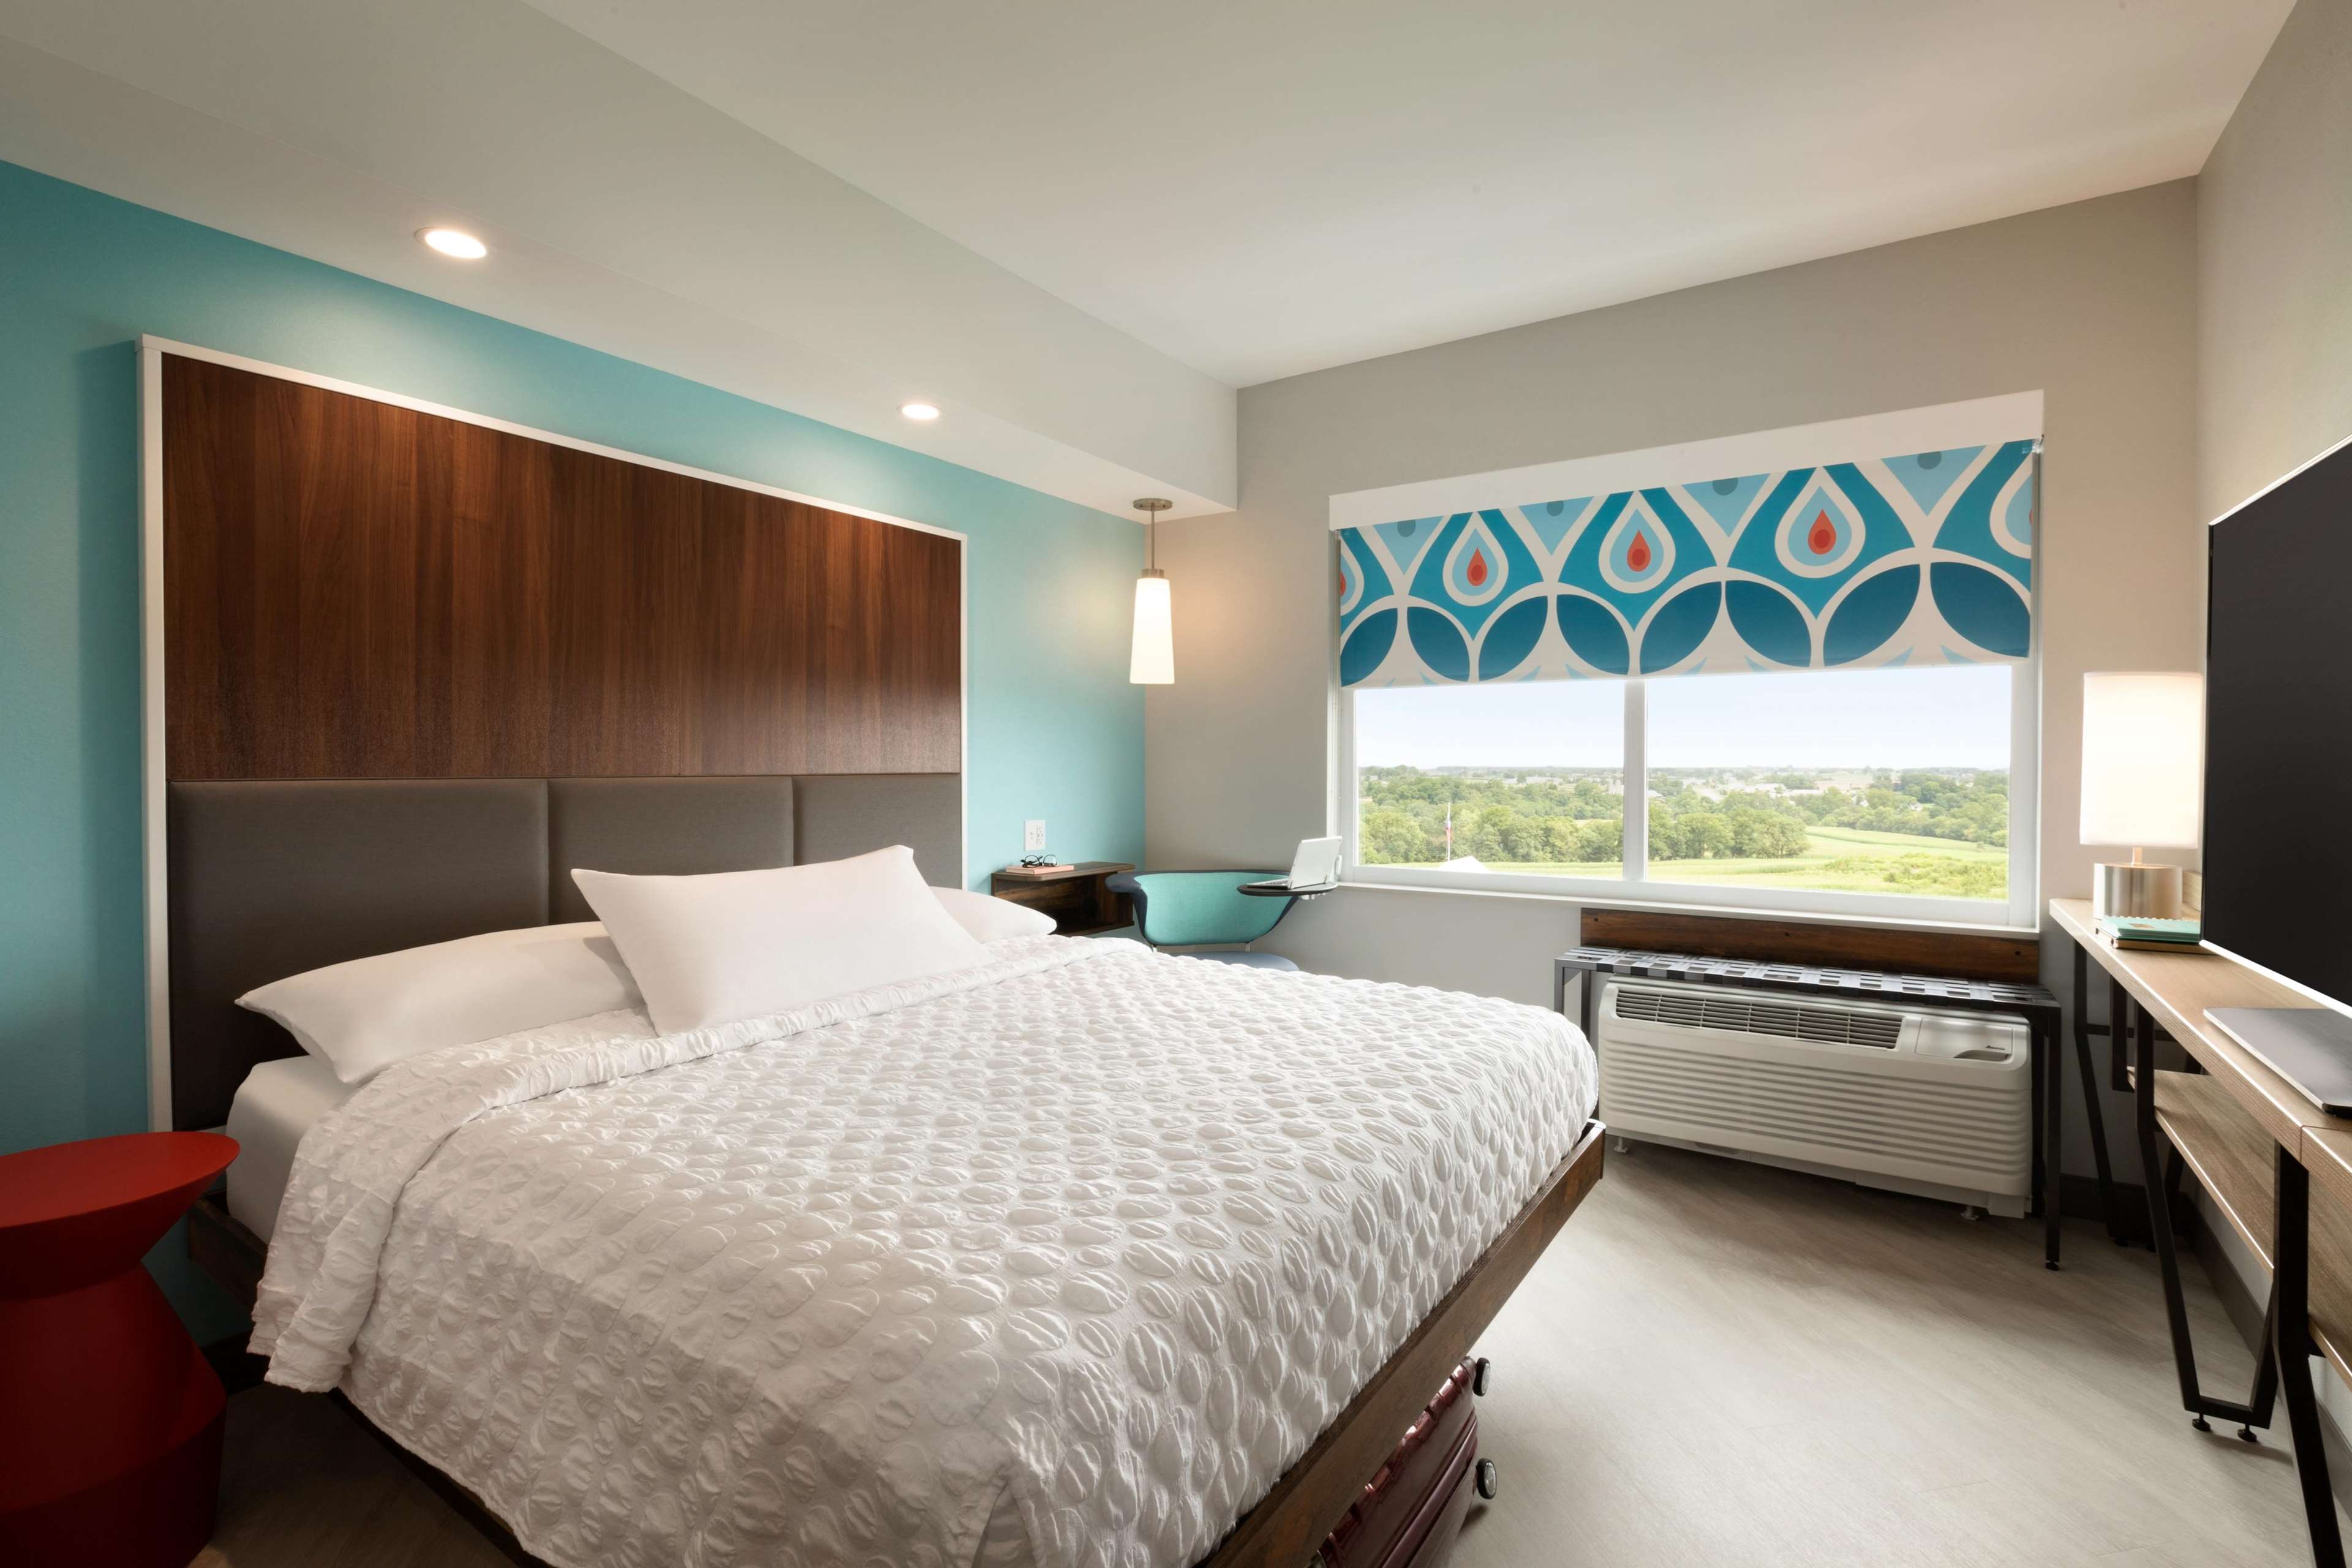 Tru By Hilton Stylesch Hotel Sall Miwwelen Guestroom Personnalisatioun Featured Image